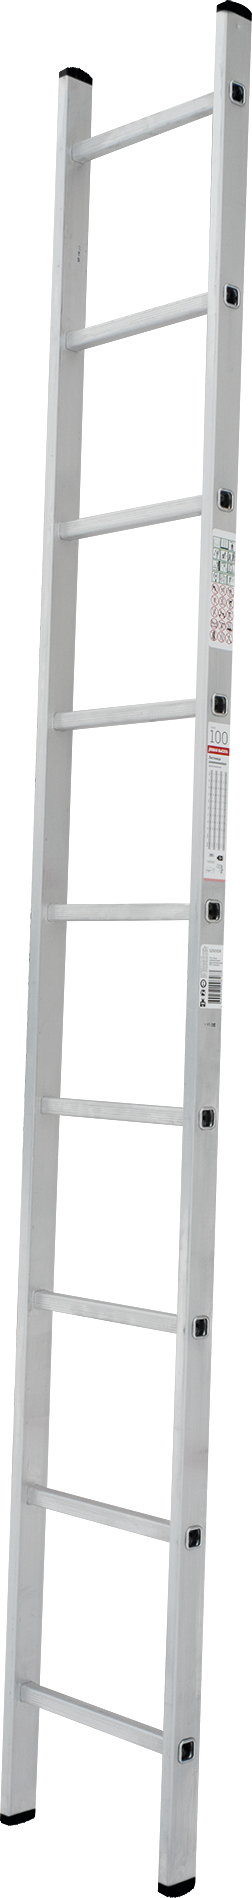 Лестница алюминиевая односекционная NV 1210 артикул 1210109